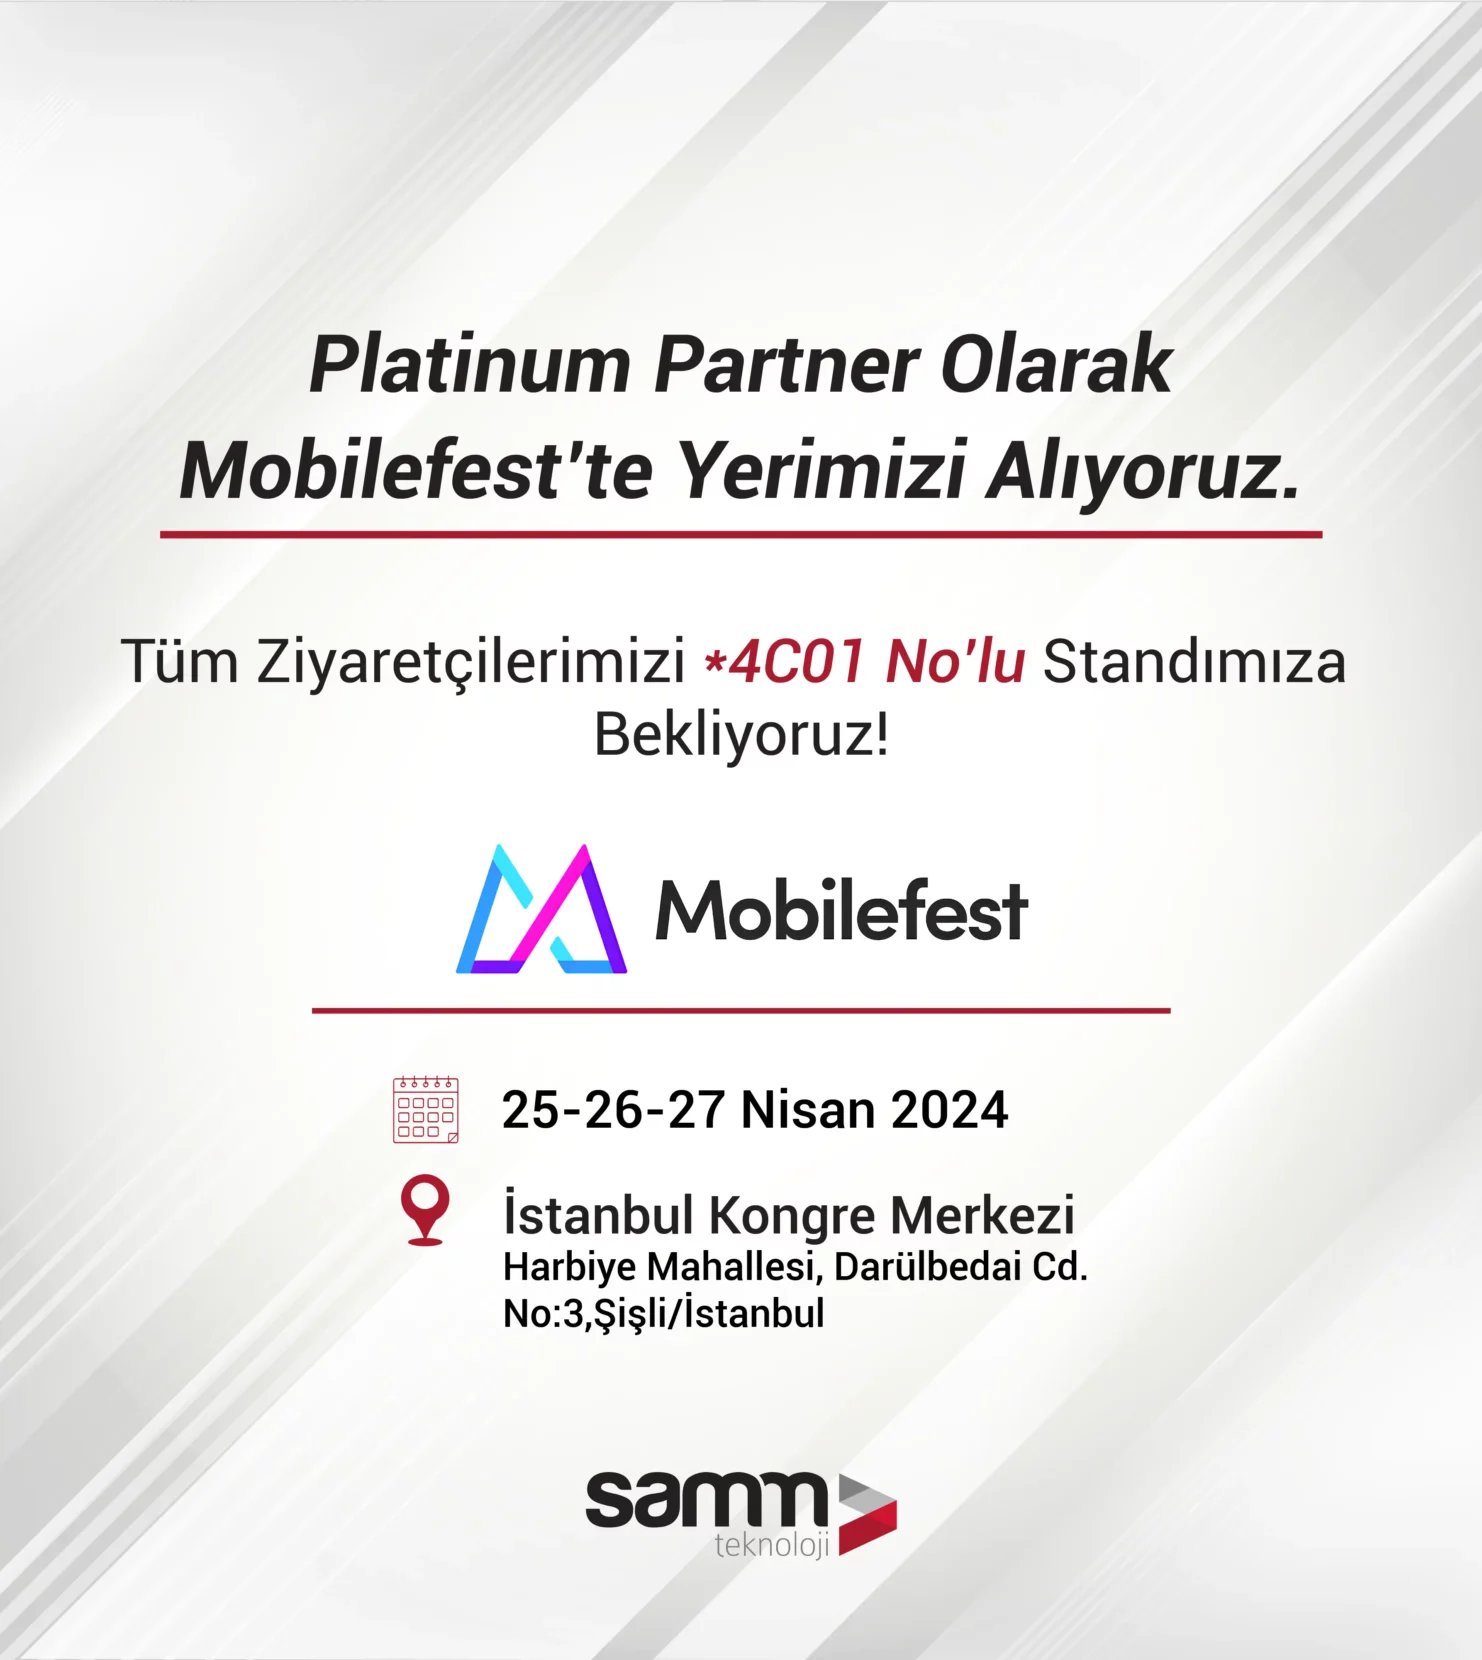 SAMM Teknoloji-Mobilefest-Viavi-TR